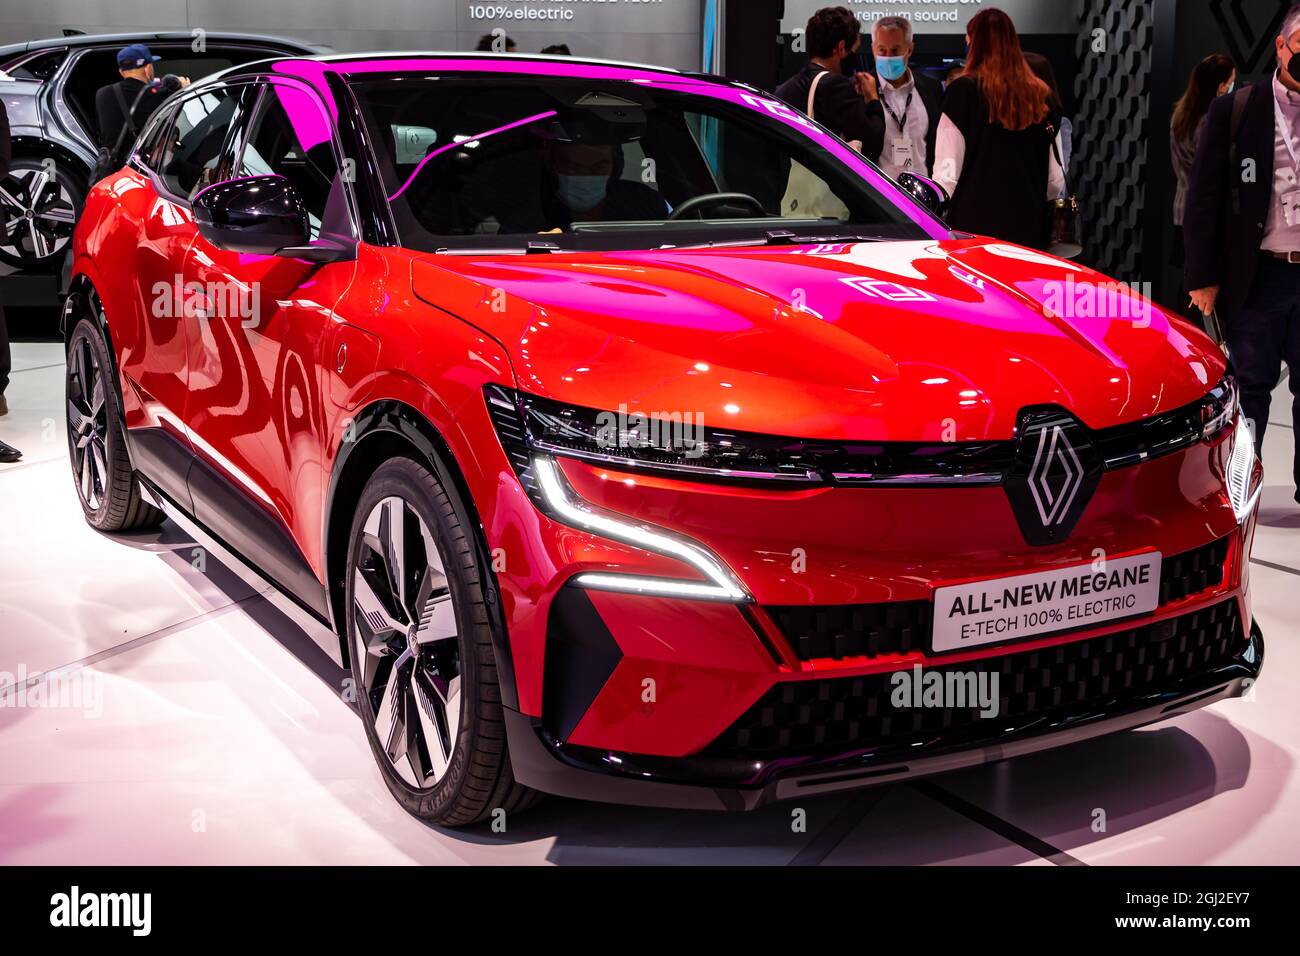 Renault Megane e-Tech Electric car presentata al salone IAA Mobility 2021 a Monaco di Baviera, Germania - 6 settembre 2021. Foto Stock